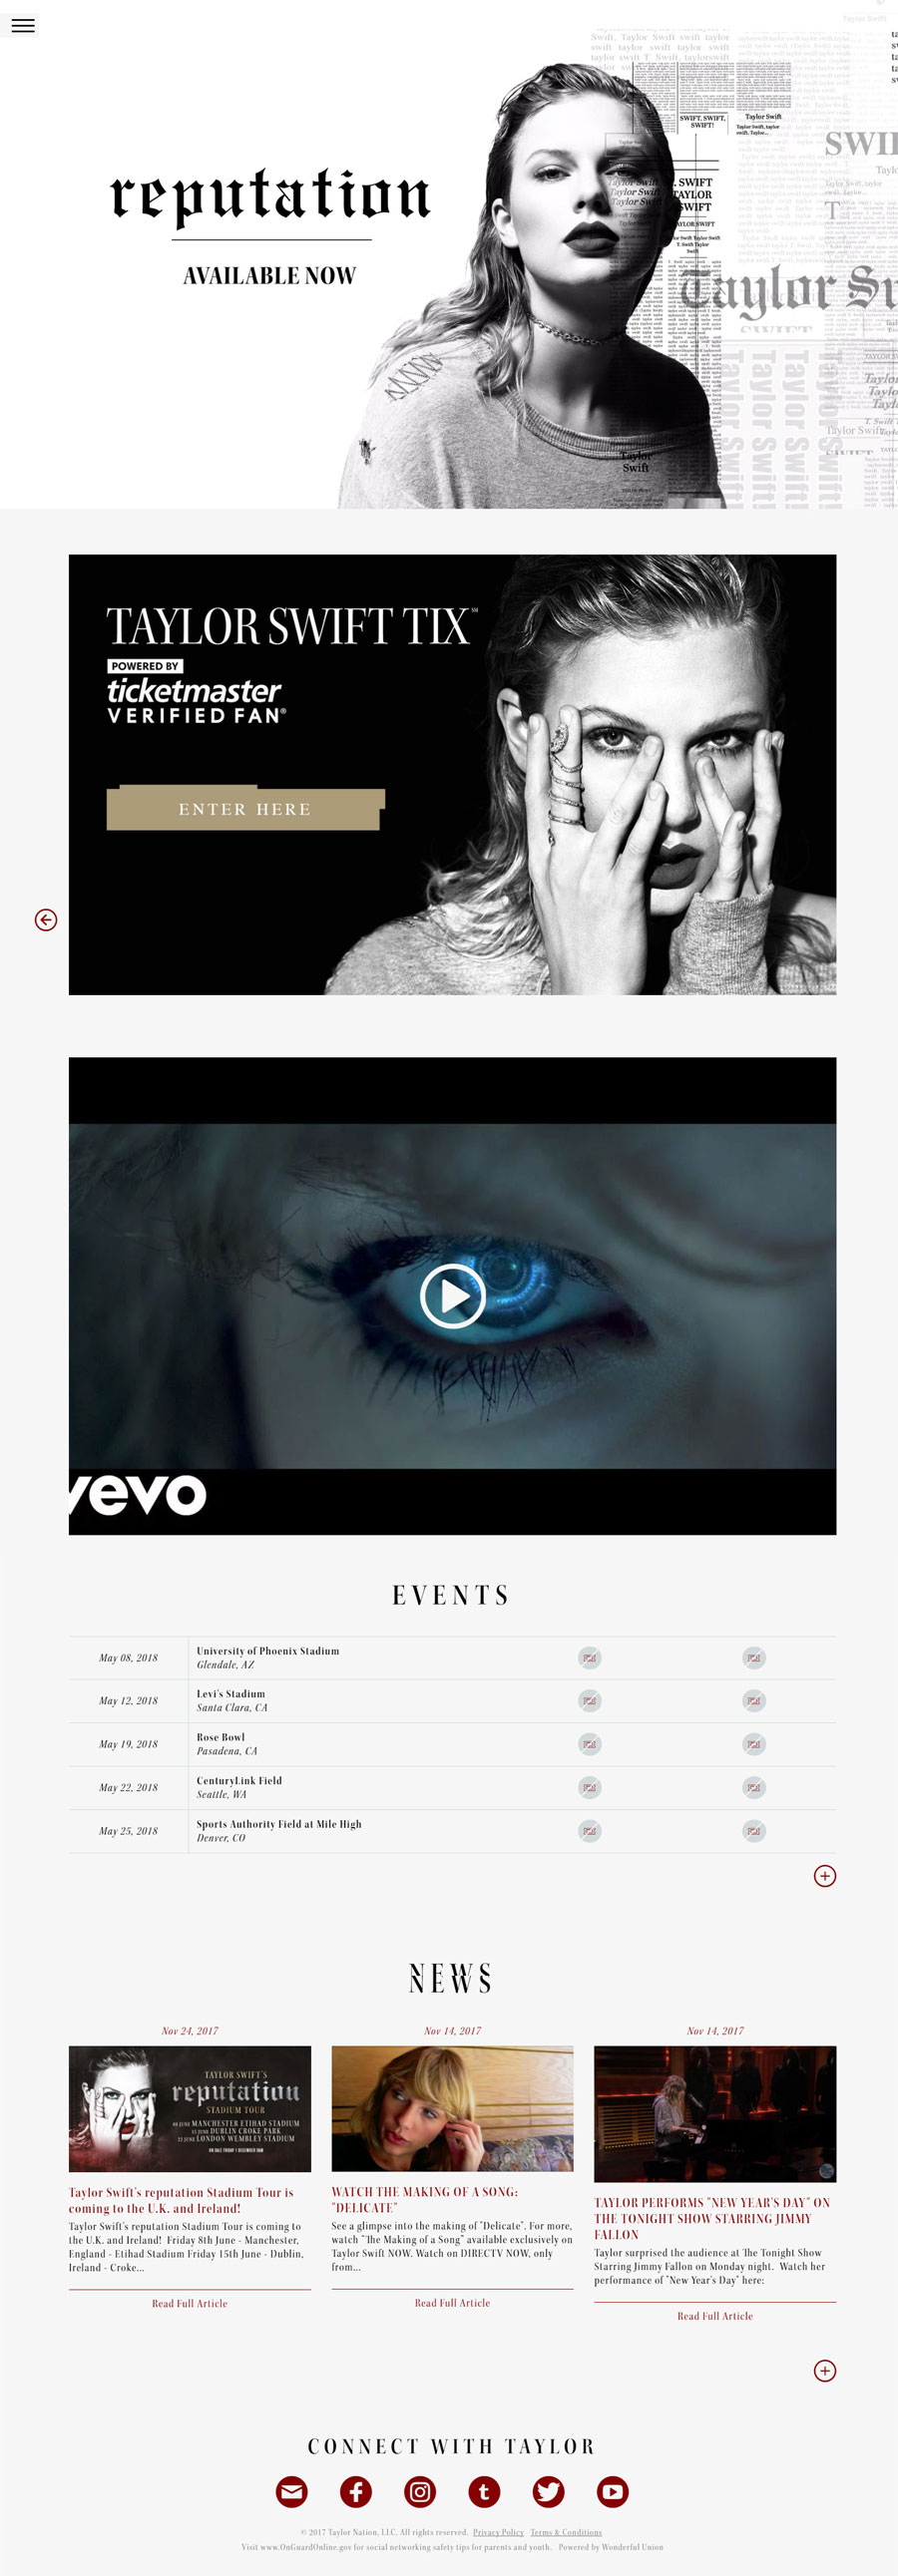 Taylor Swift American Singer Celebrity Website Design